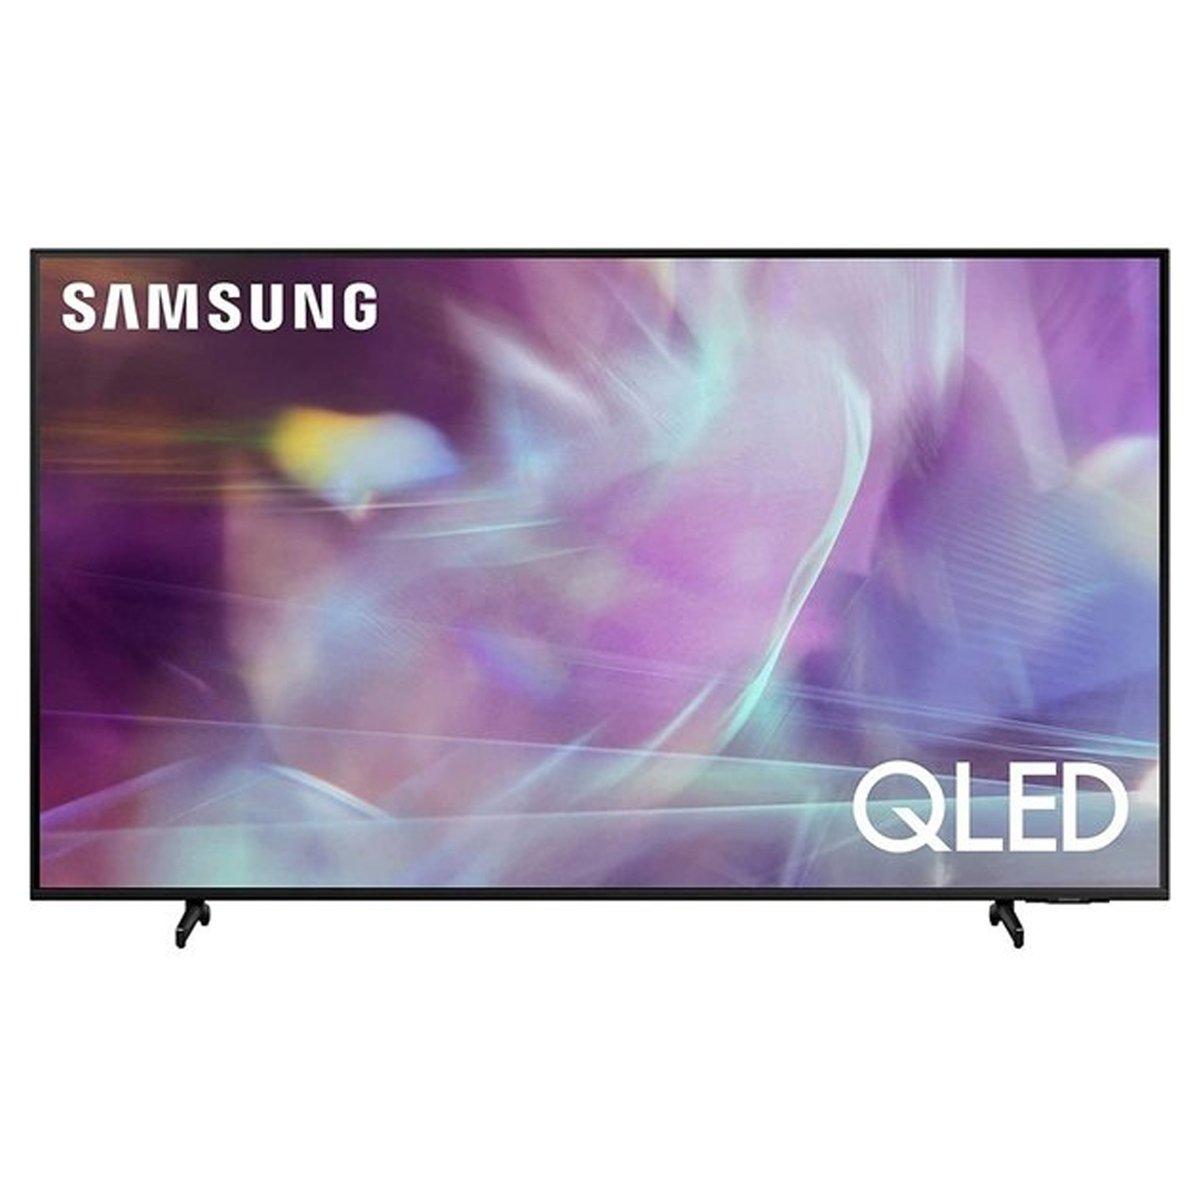 Samsung QLED TV QA65Q60ABUXUM 65 inches